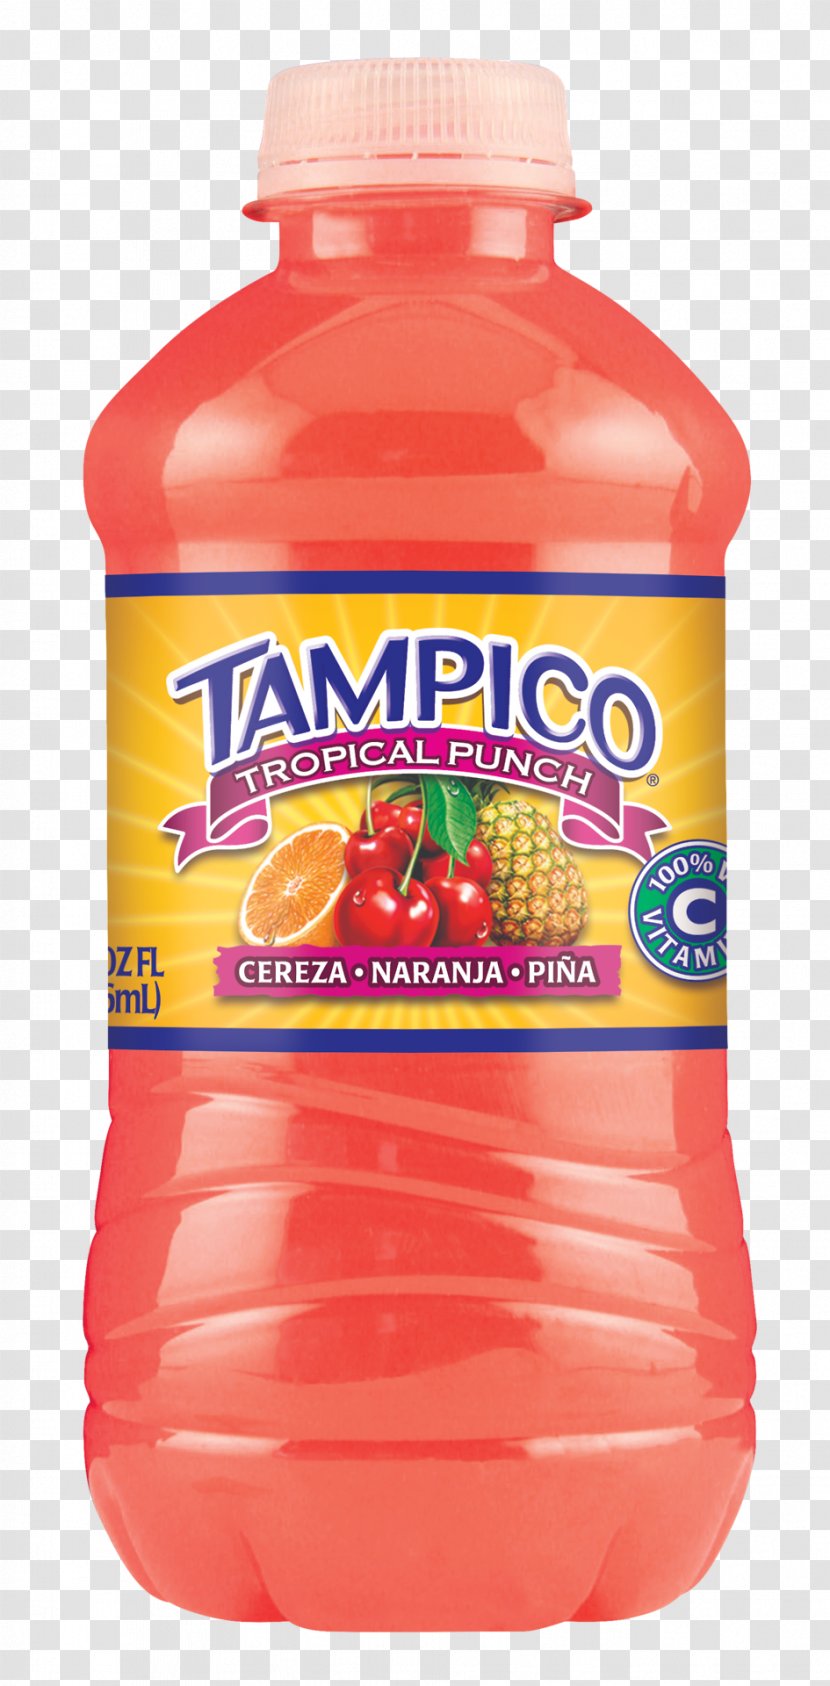 MCF TRADE S.r.l. Tampico Orange Drink Bertinoro - Tahu Transparent PNG